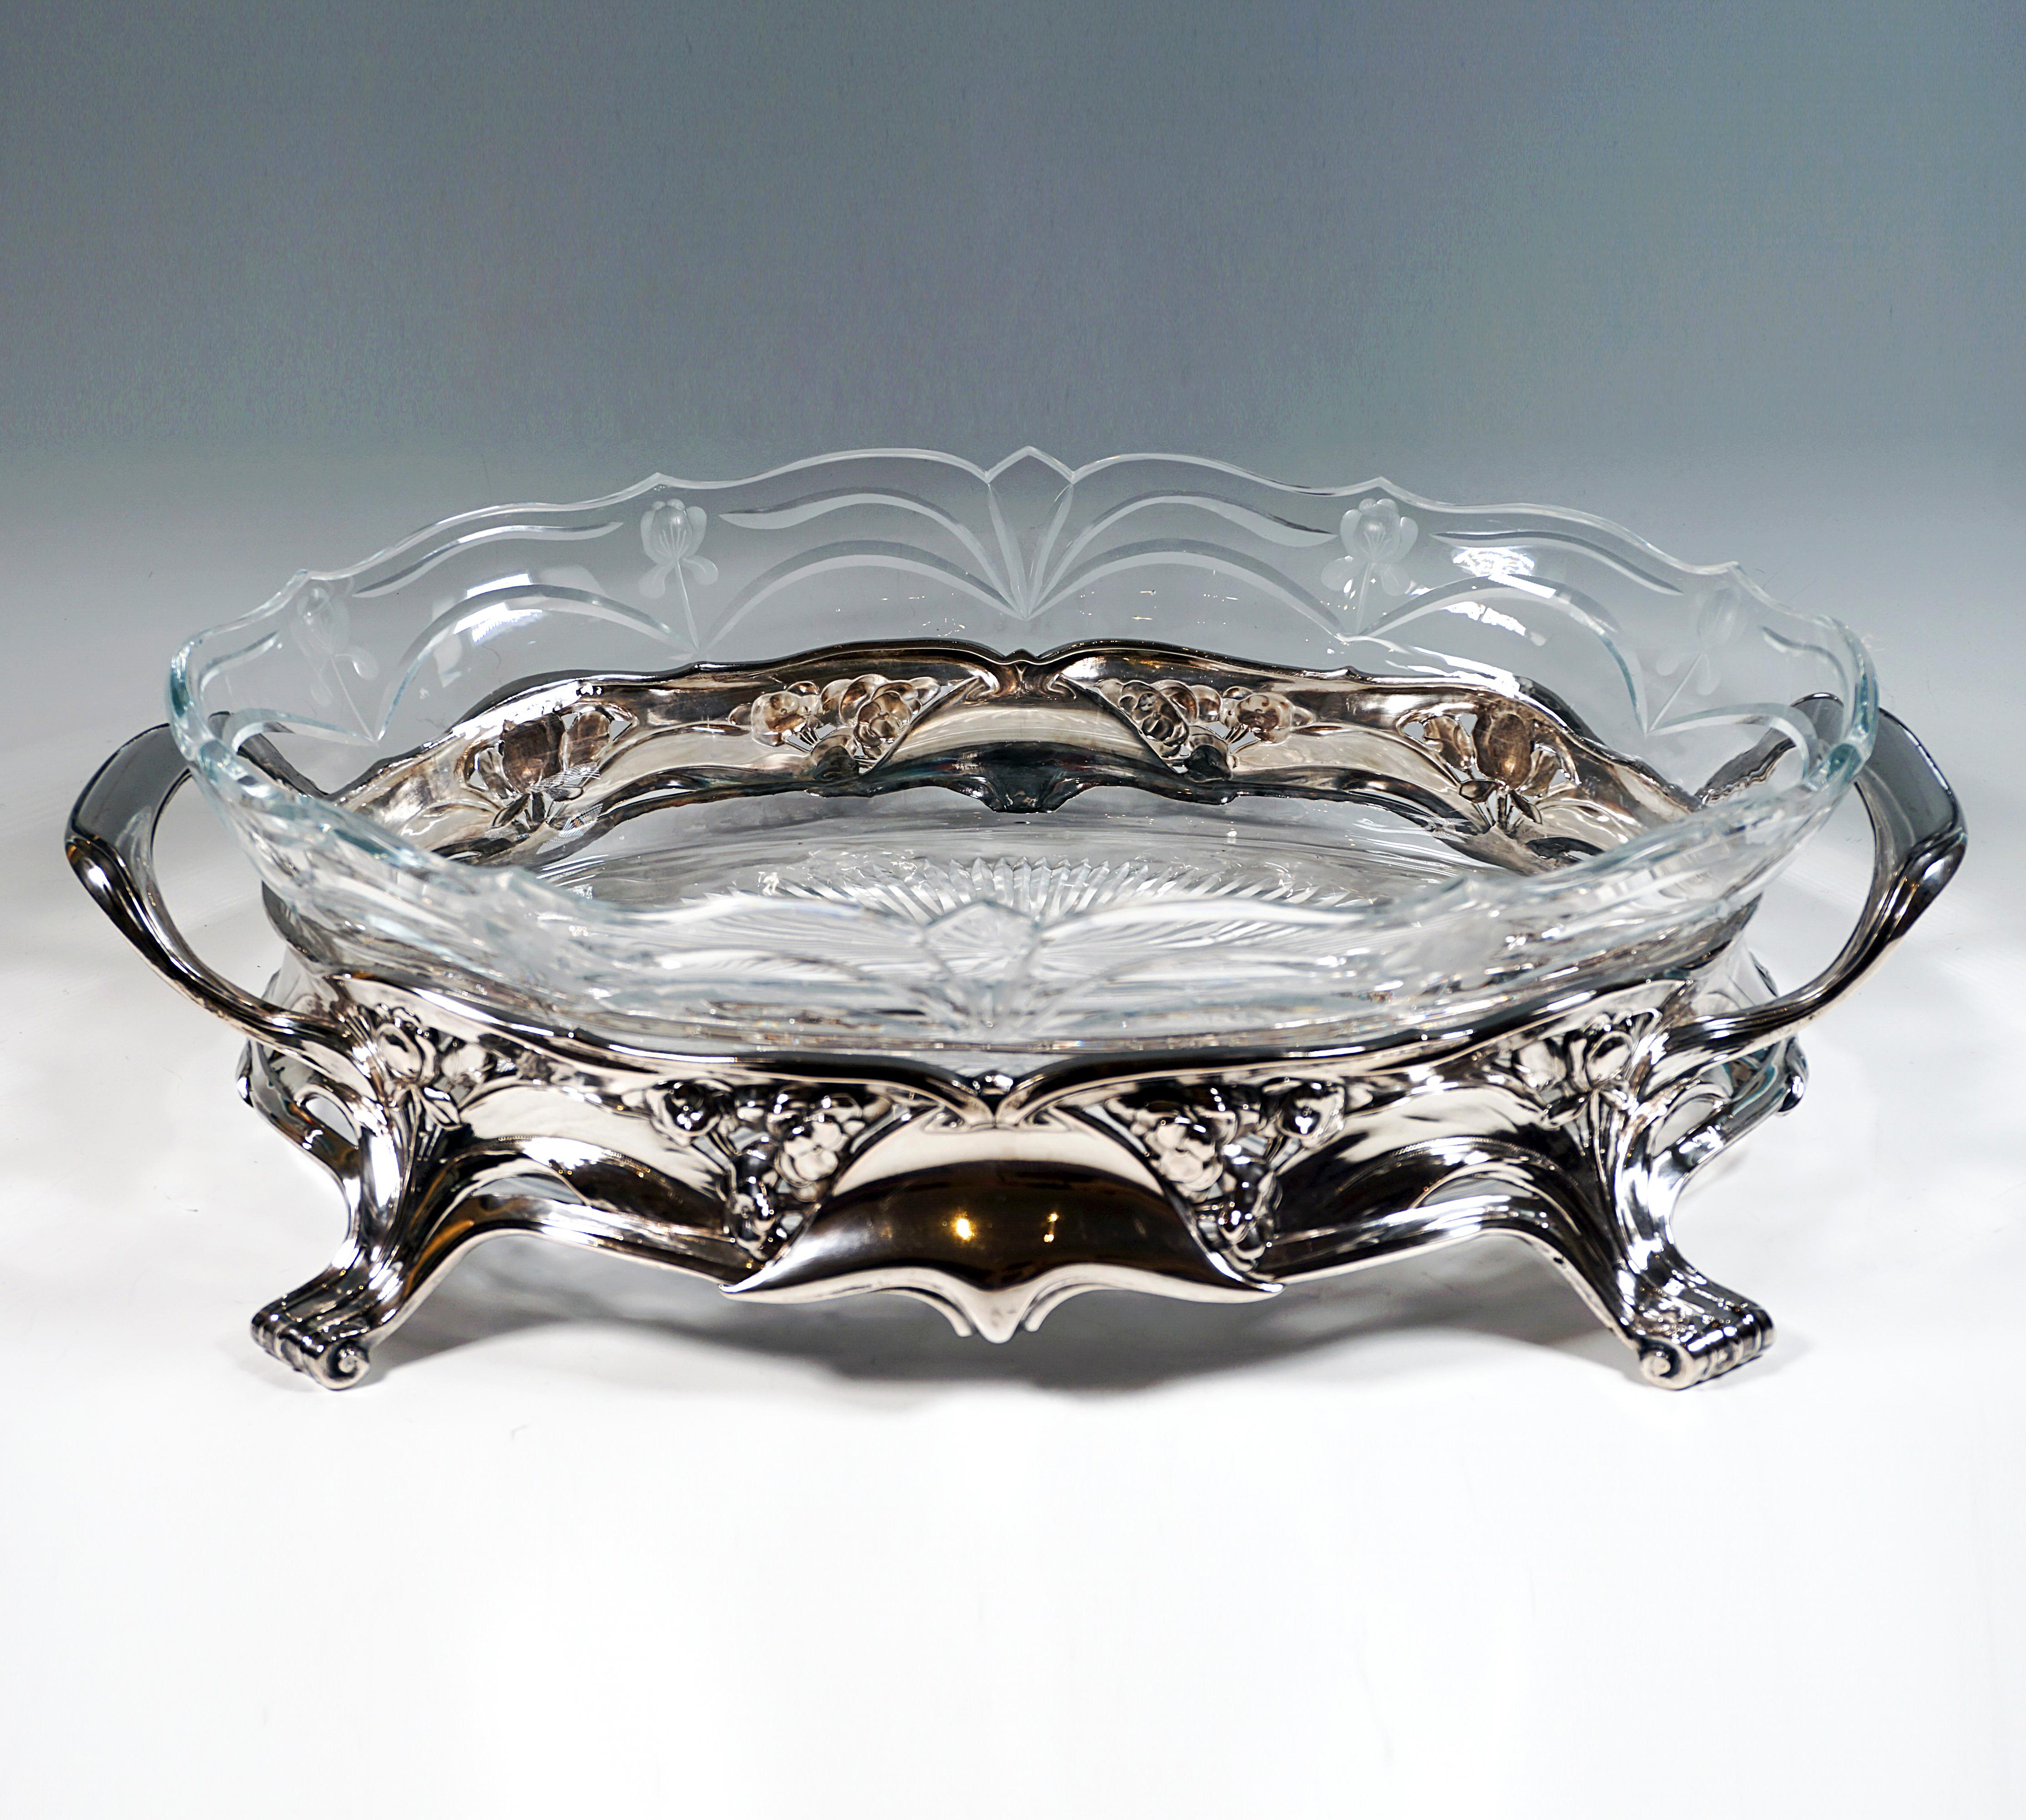 Elegantes, festliches Silbergefäß in breiter ovaler Grundform mit vier vorspringenden Volutenfüßen, auf der Vorder- und Rückseite mittig asymmetrische Platten, die die umlaufenden blatt-, blüten- und bandartigen Spangen zusammenhalten, leicht